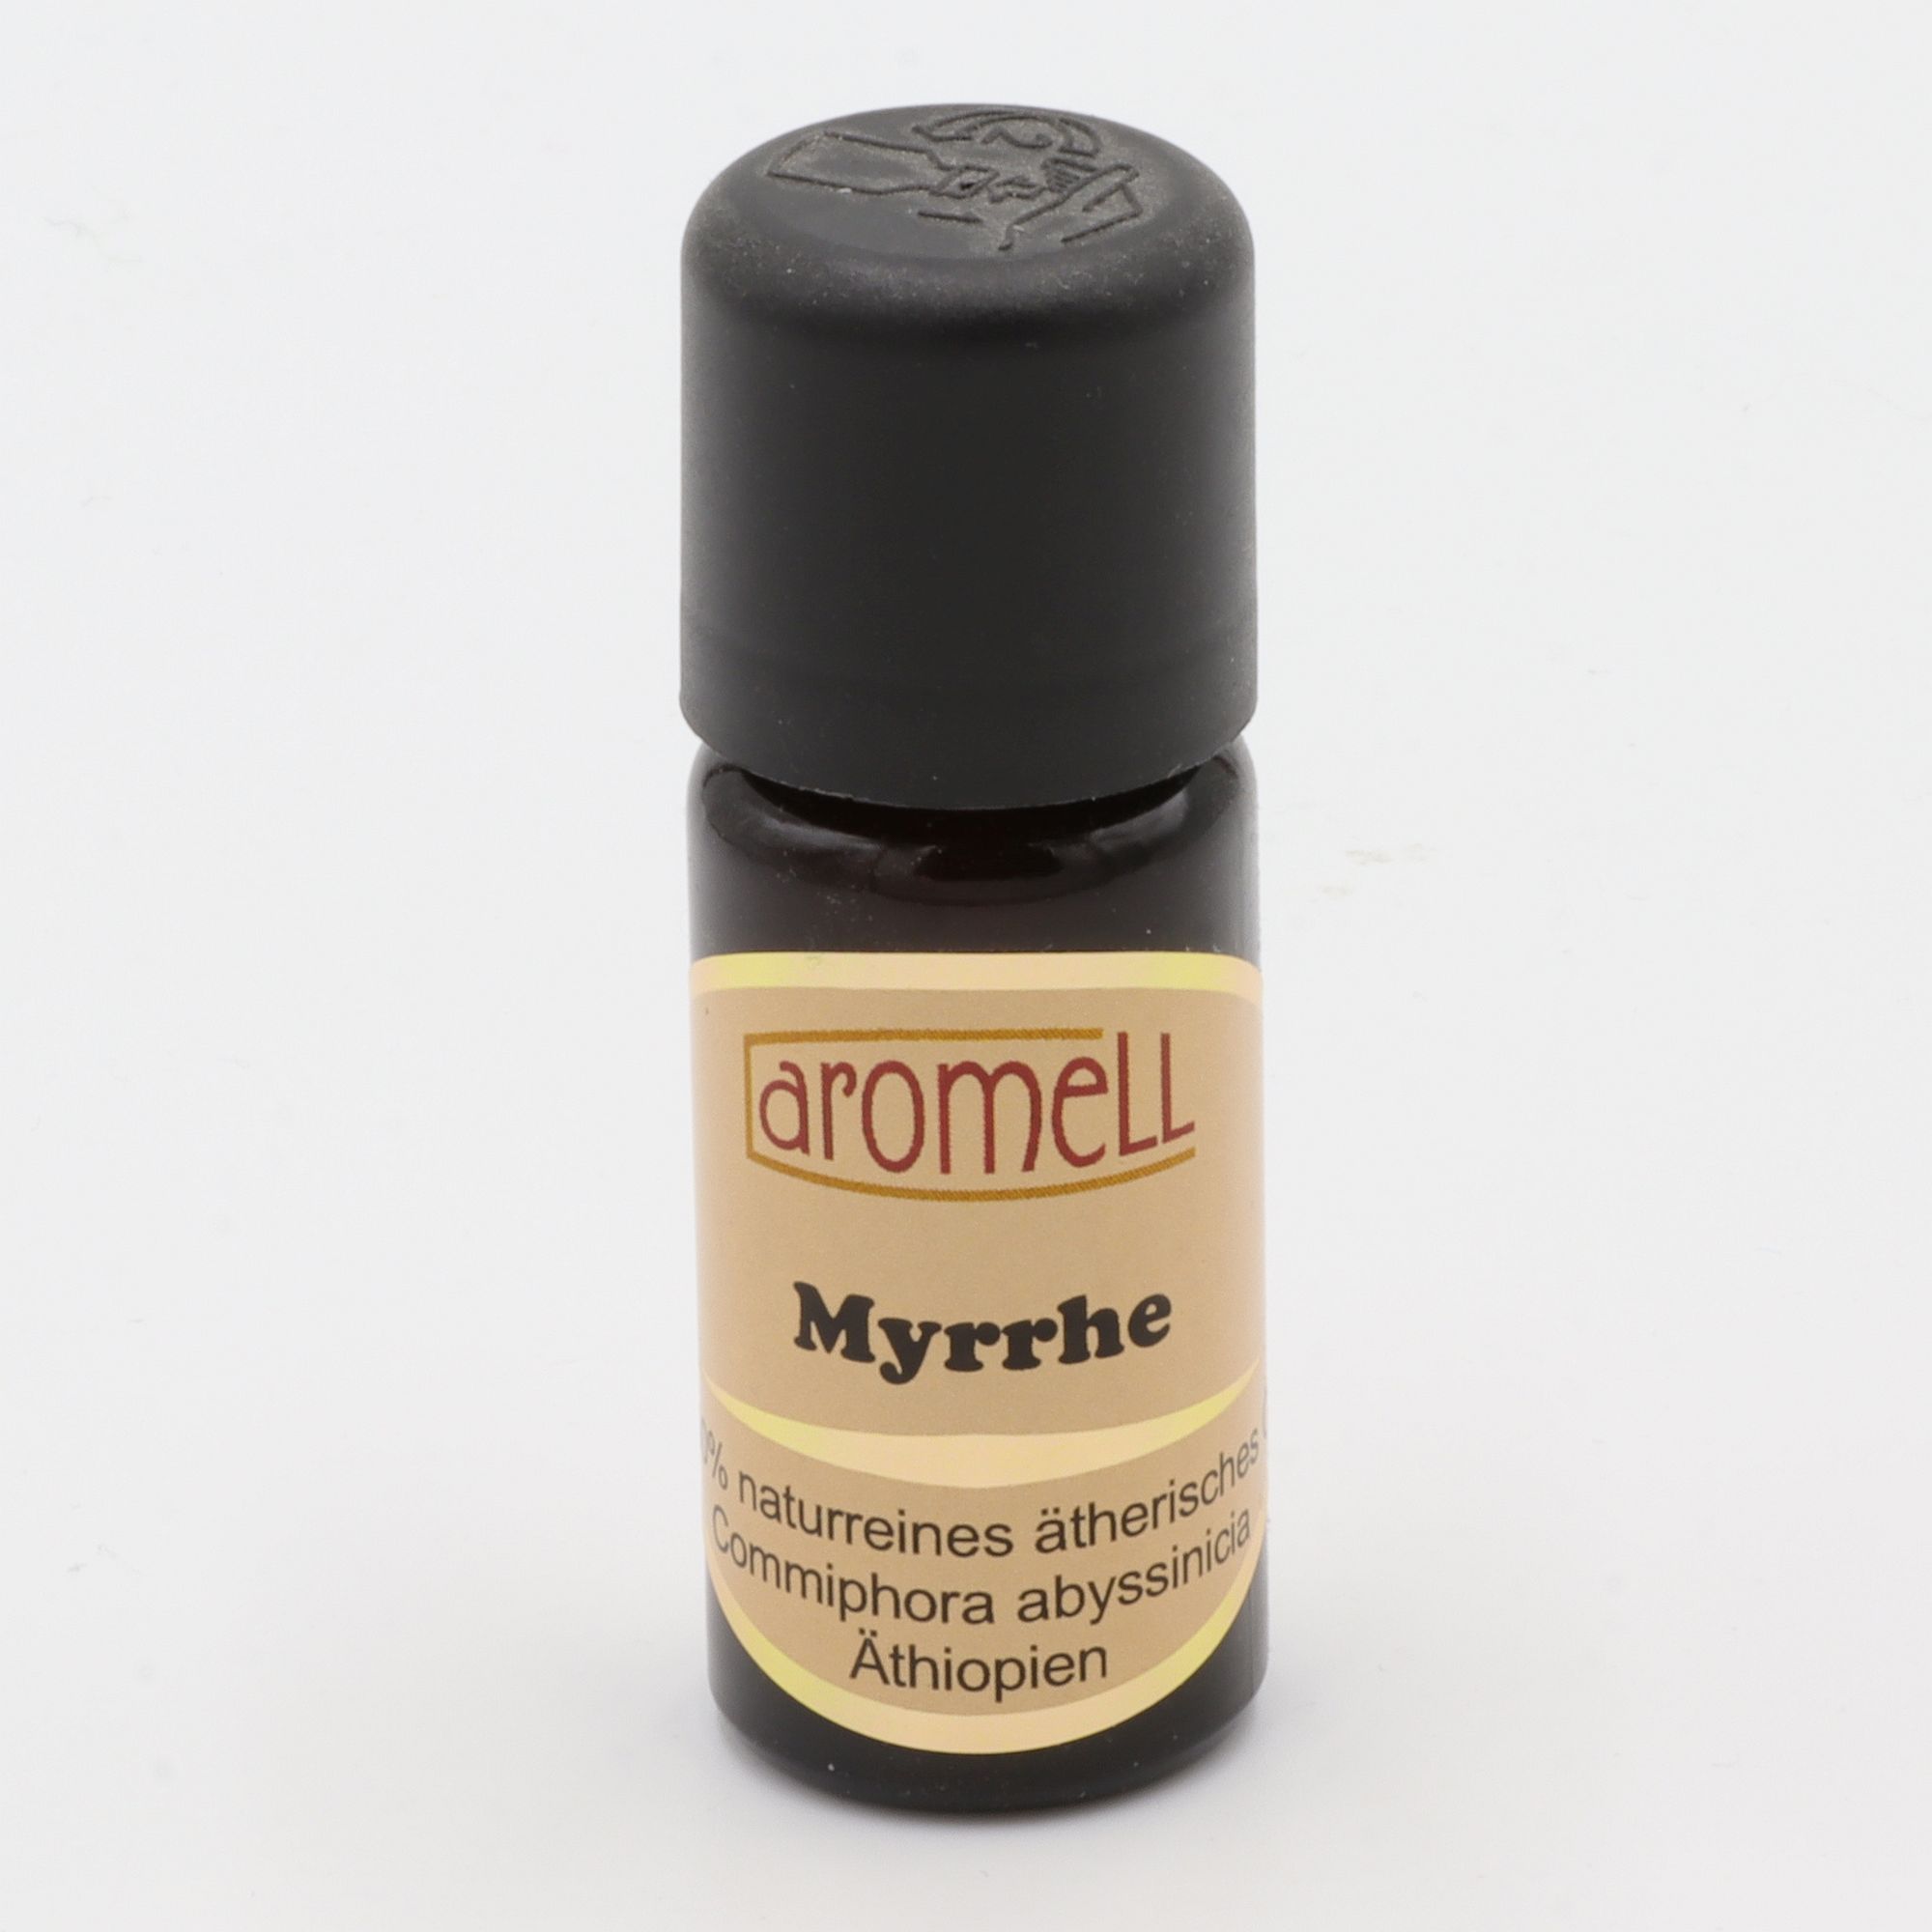 Ätherisches Öl - Aromell - Myrrhe - 100% naturrein - Commiphora Abyssinicia aus Äthiopien - aromatischer Raumduft für Dein Wohlbefinden - Glas mit Tropfendosierung